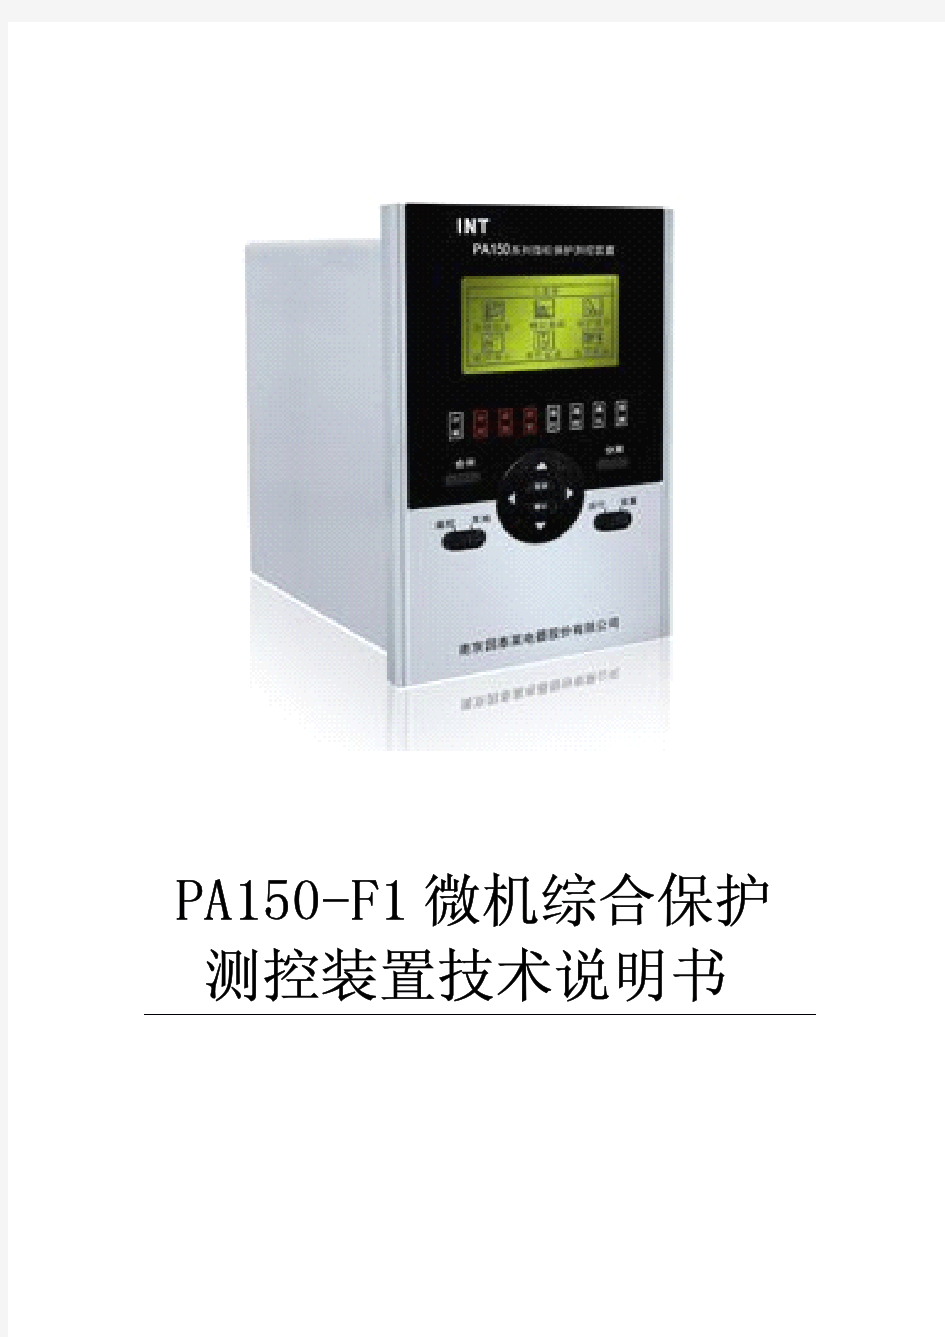 PA150-F1微机综合保护测控装置技术说明书